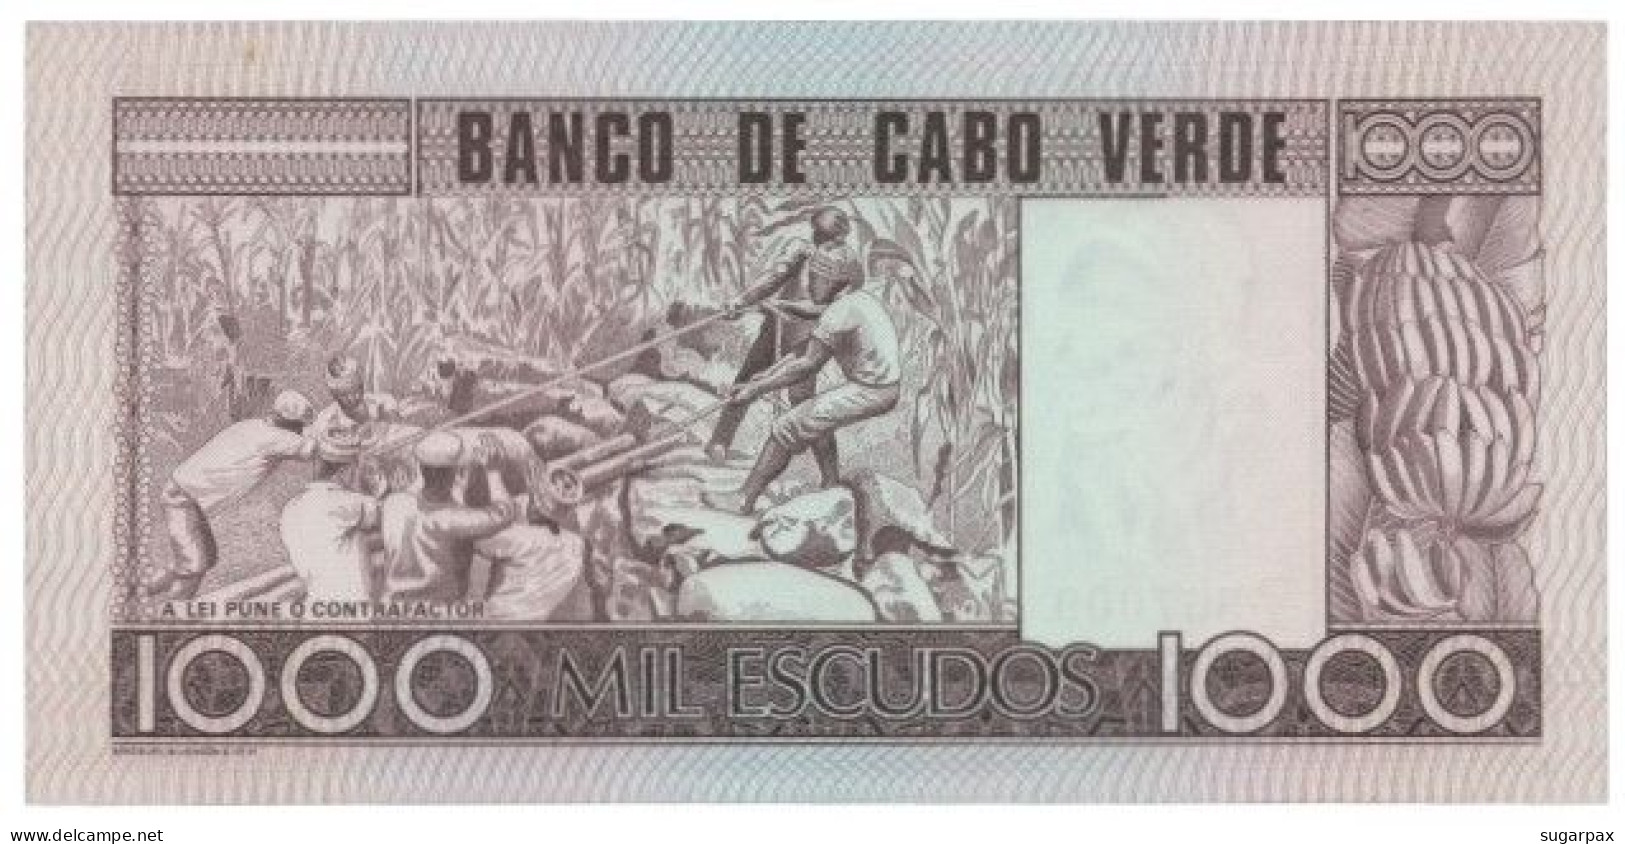 CAPE VERDE - 1000 ESCUDOS - 20.01.1977 - Pick 56.a - Unc. - Amilcar Cabral - 1 000 - Cabo Verde